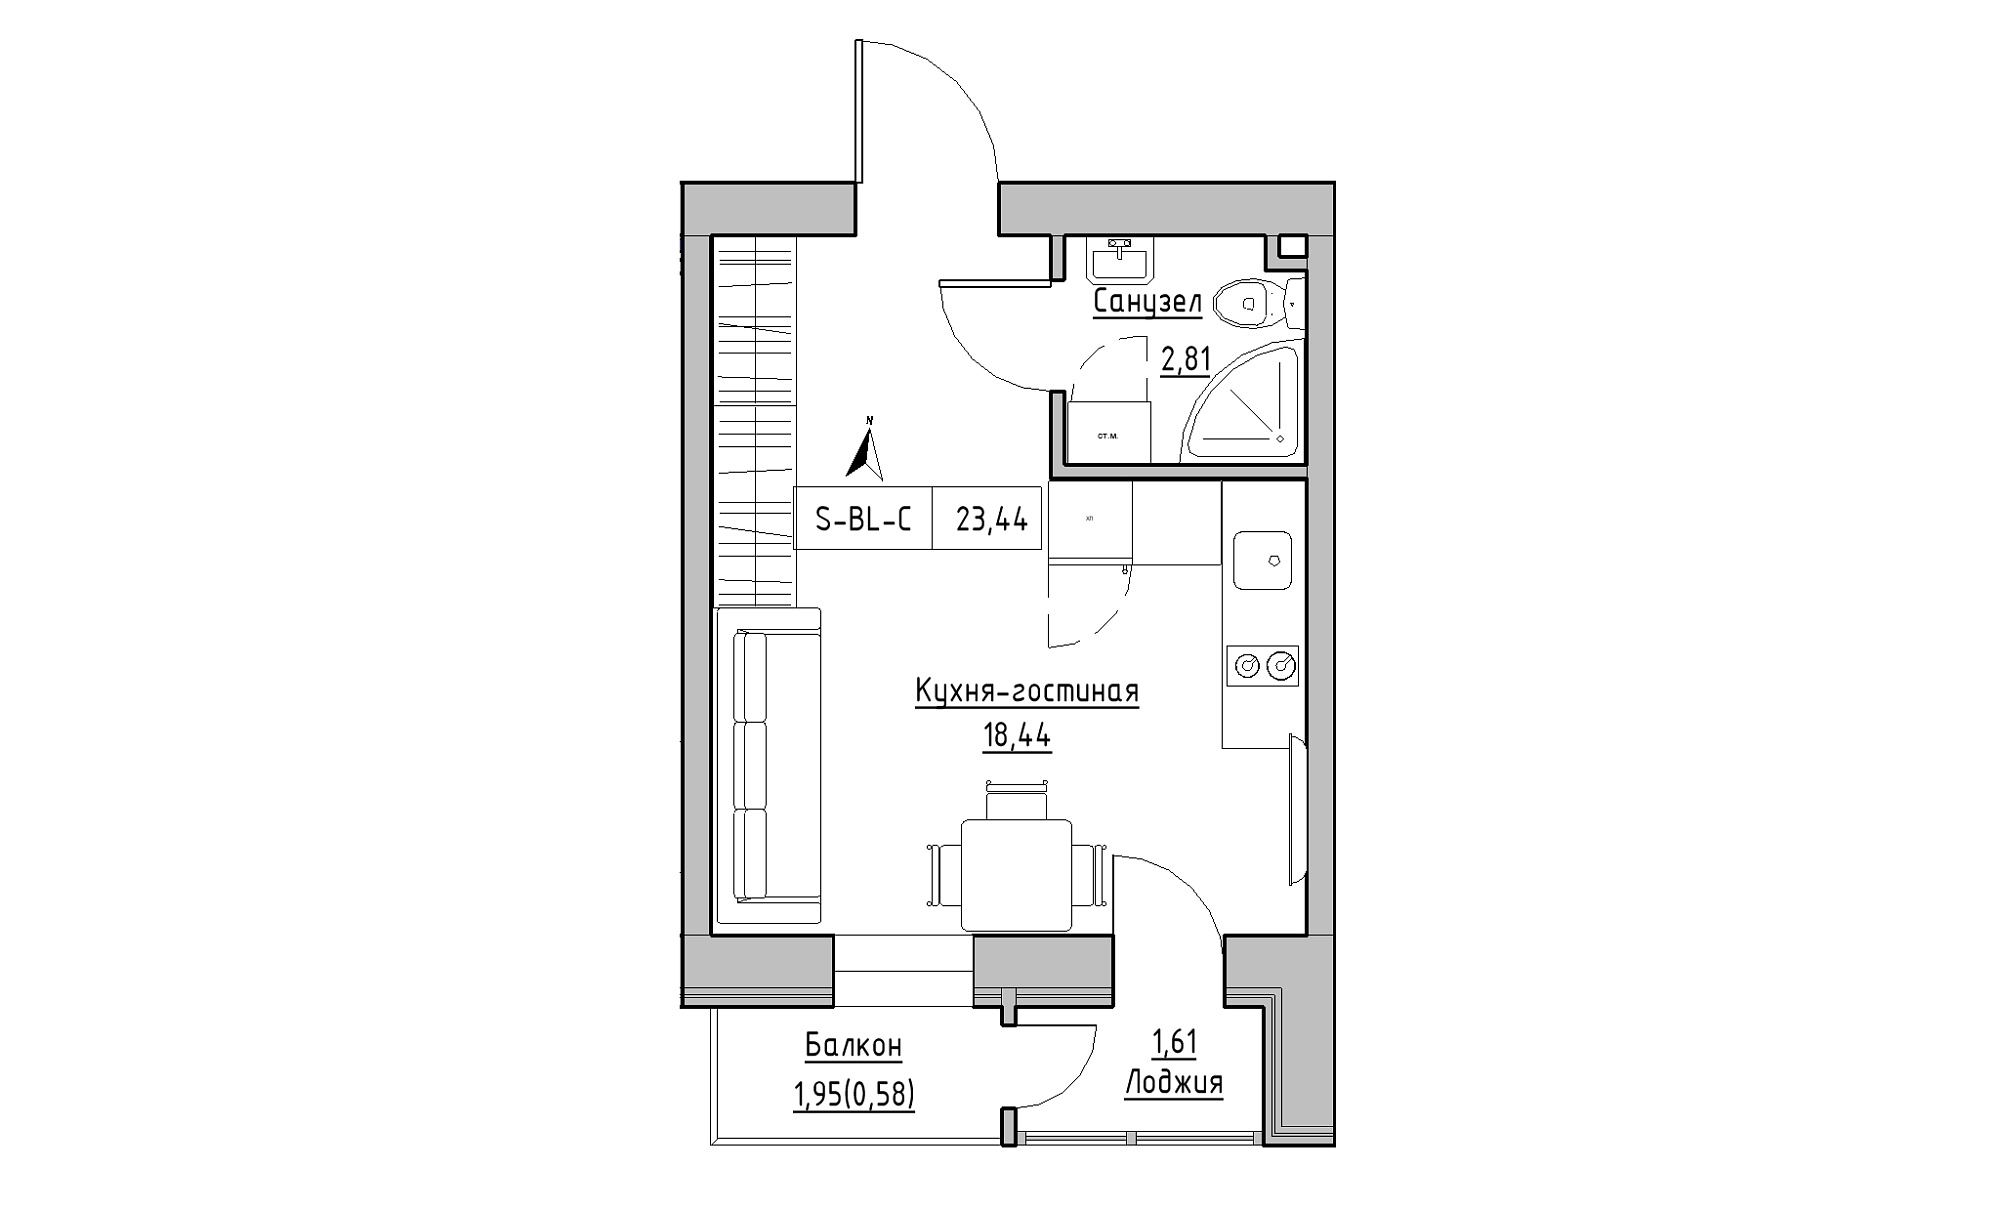 Планування Smart-квартира площею 23.44м2, KS-023-04/0013.